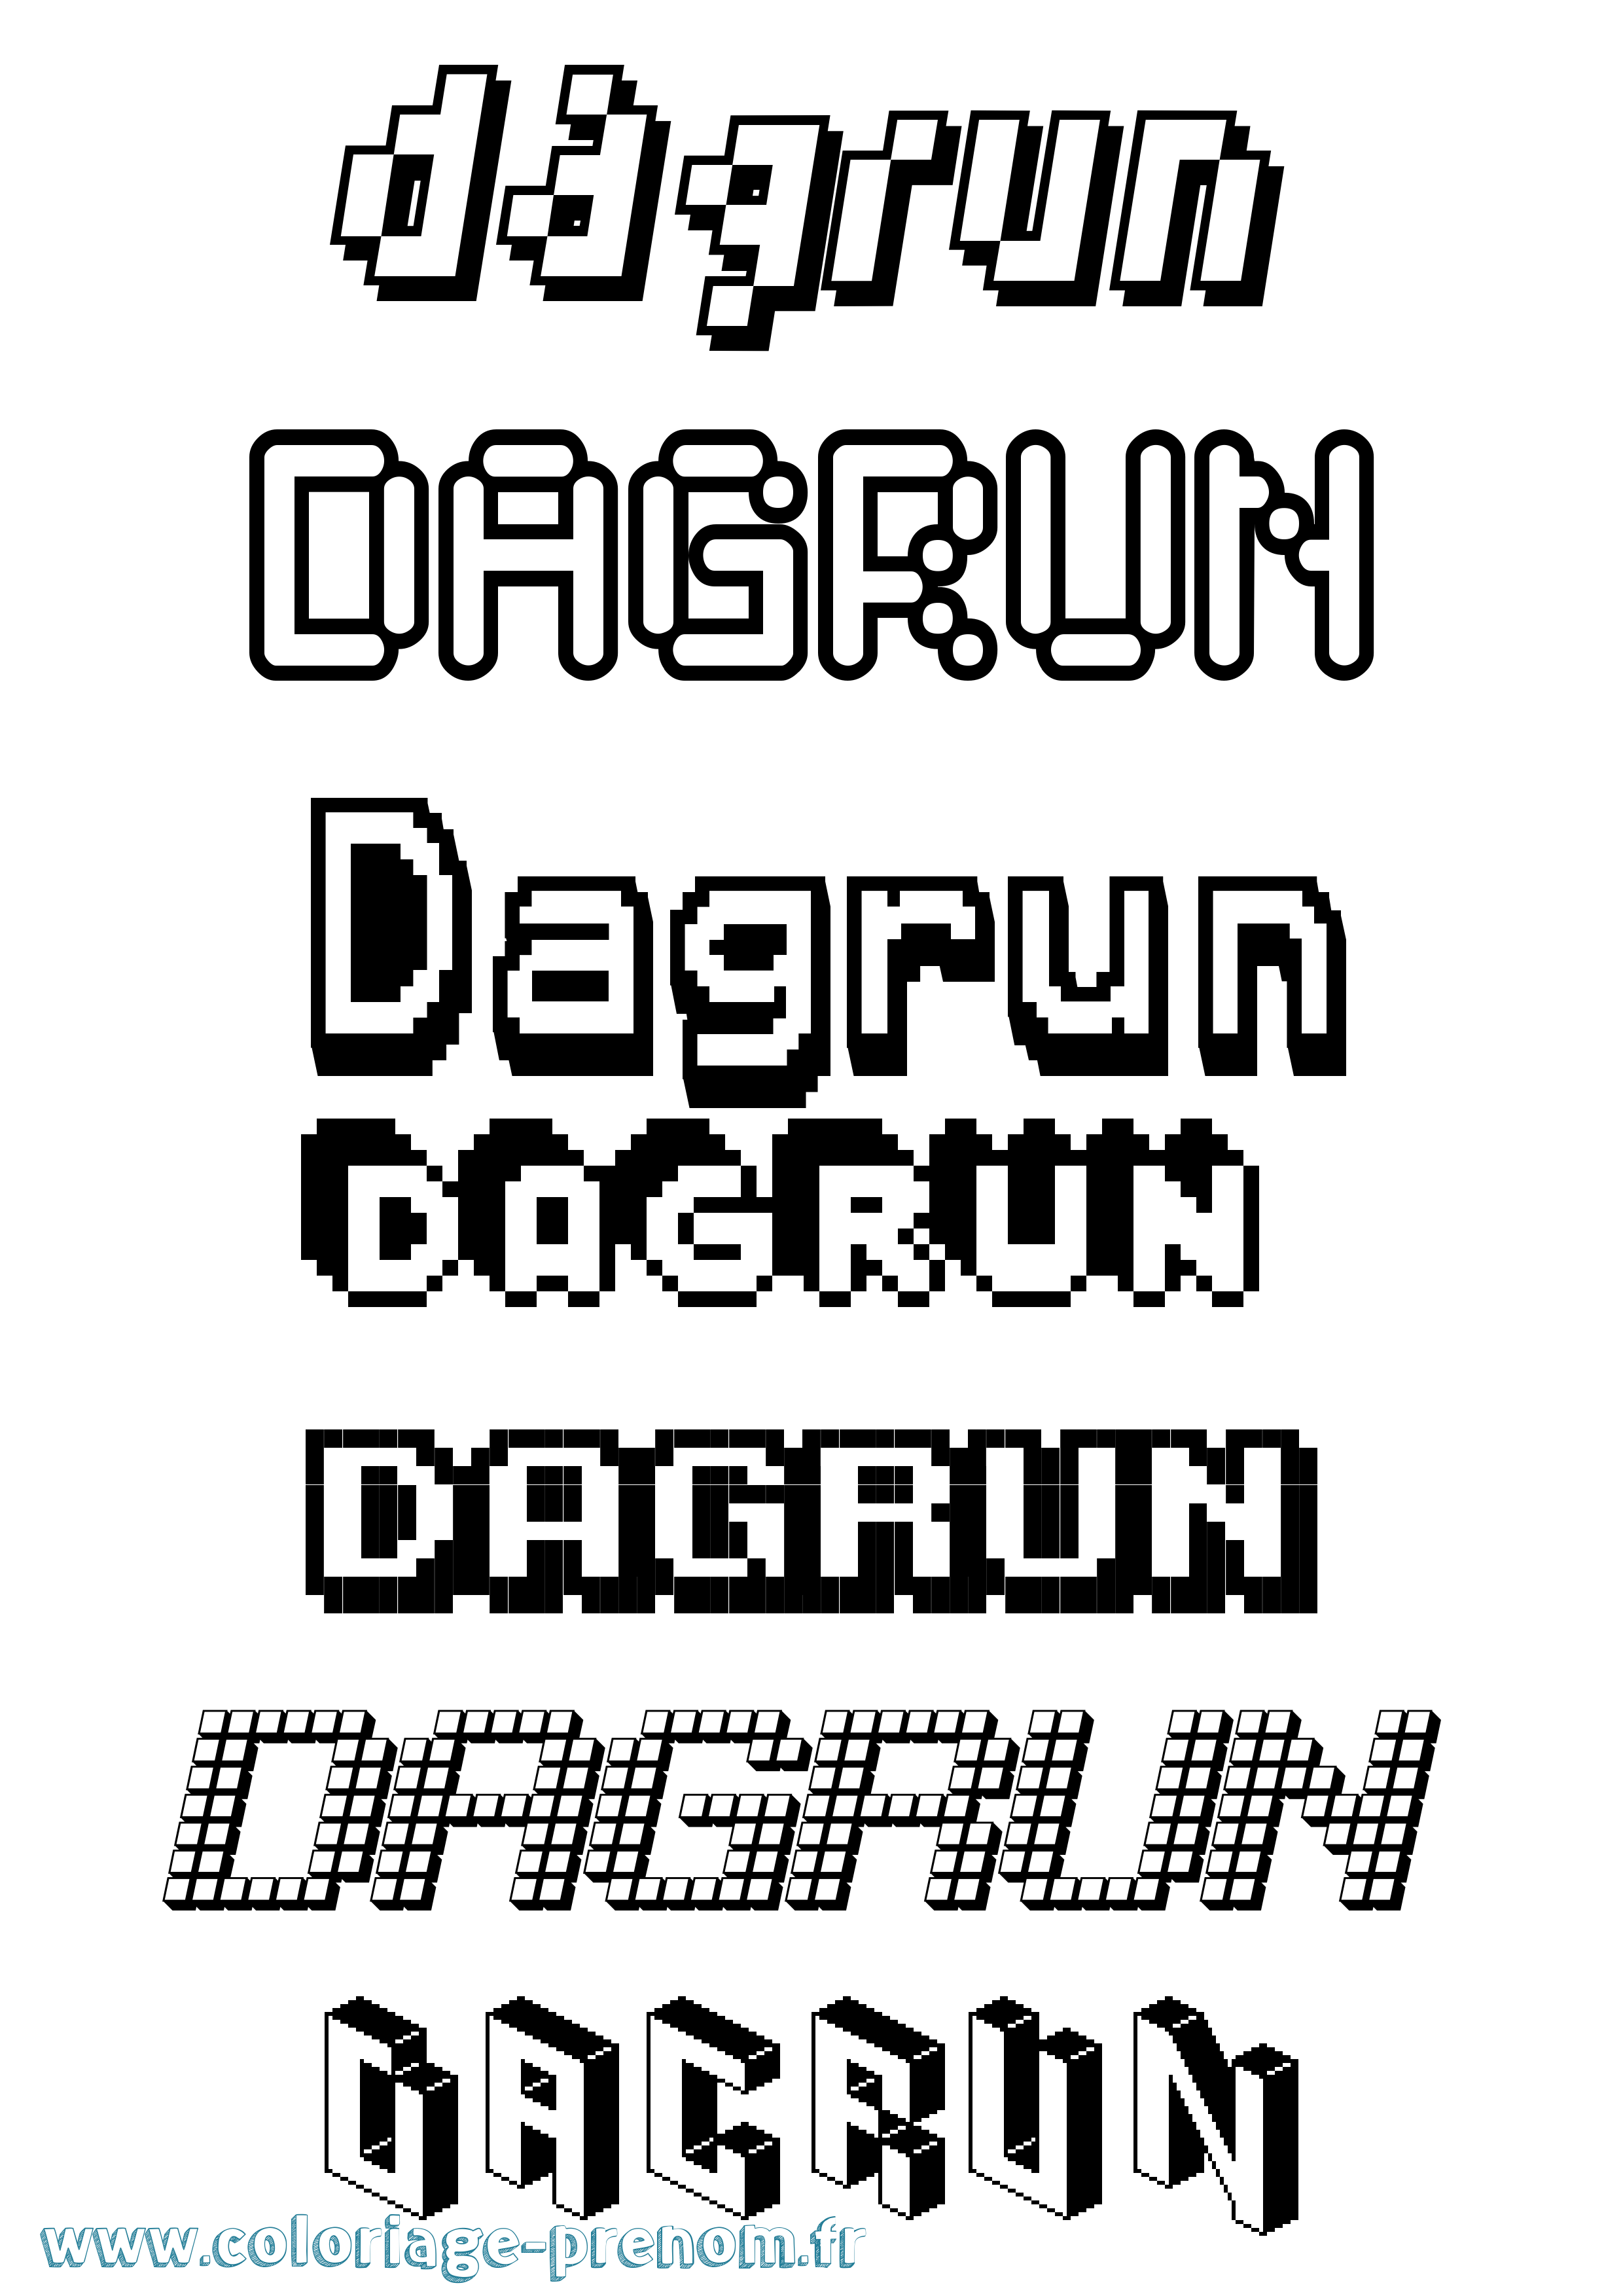 Coloriage prénom Dagrun Pixel